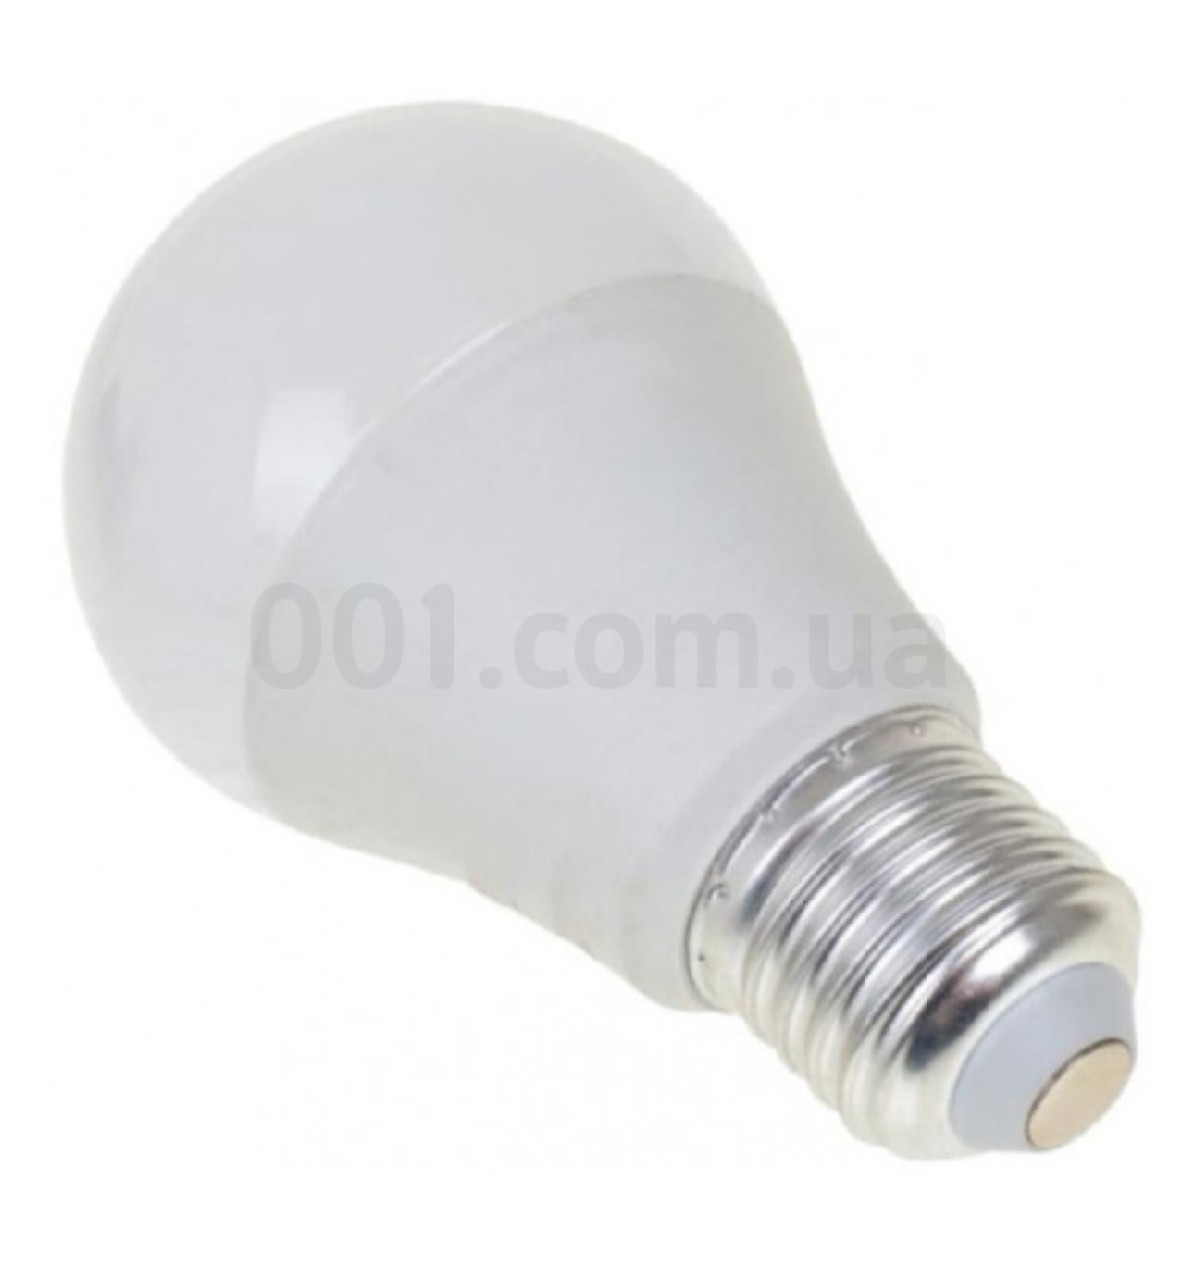 Светодиодная (LED) лампа низковольтная МО-12-48В ACDC 10 Вт 6500K E27, Евросвет 256_271.jpg